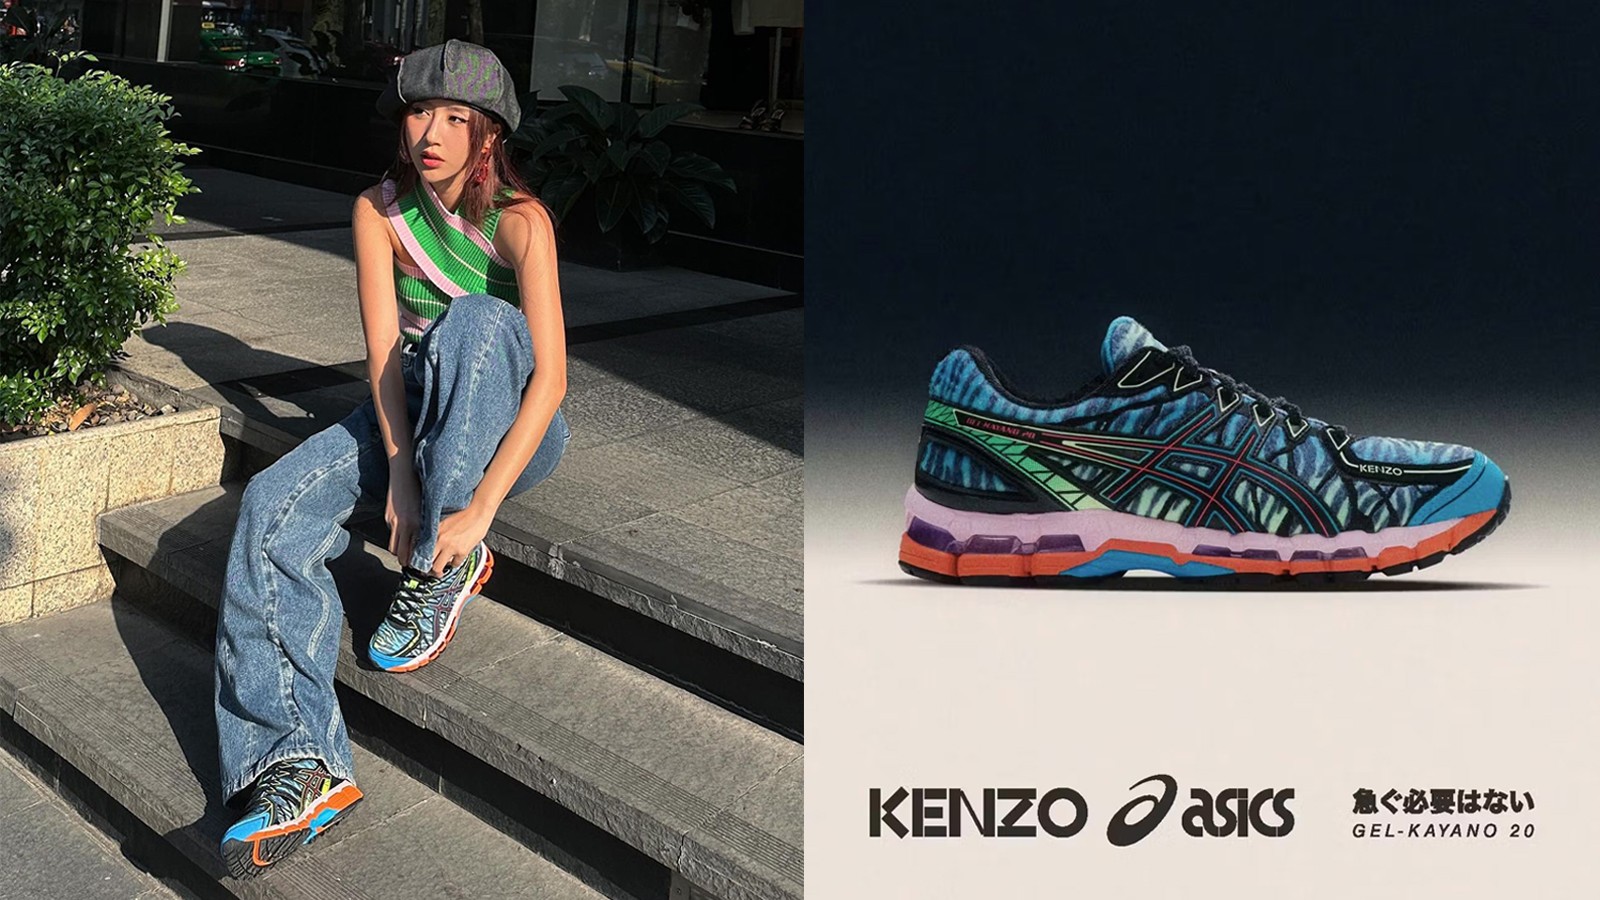 Quỳnh Anh Shyn xuất hiện trong mẫu giày mới của ASICS kết hợp KENZO